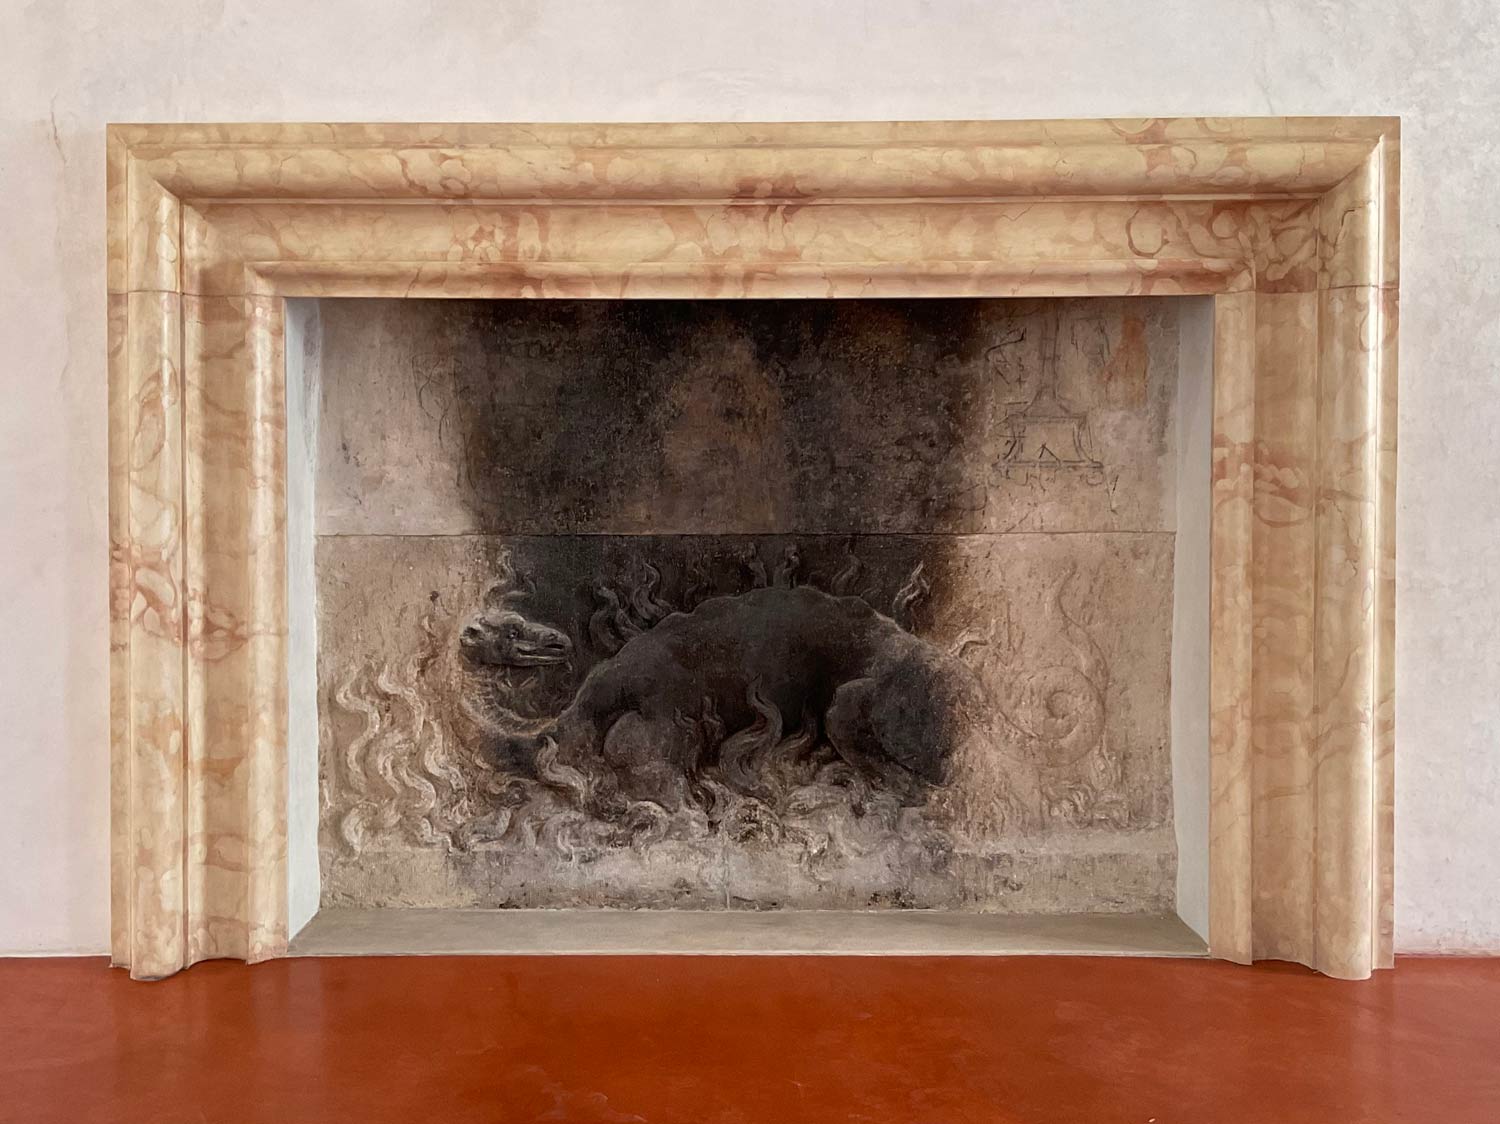 Artista ignoto, Salamandra tra le fiamme (1530-1540 circa; altorilievo, pietra tenera di Vicenza, 185 x 85 cm; Venezia, Sala di Psiche del Museo di Palazzo Grimani)